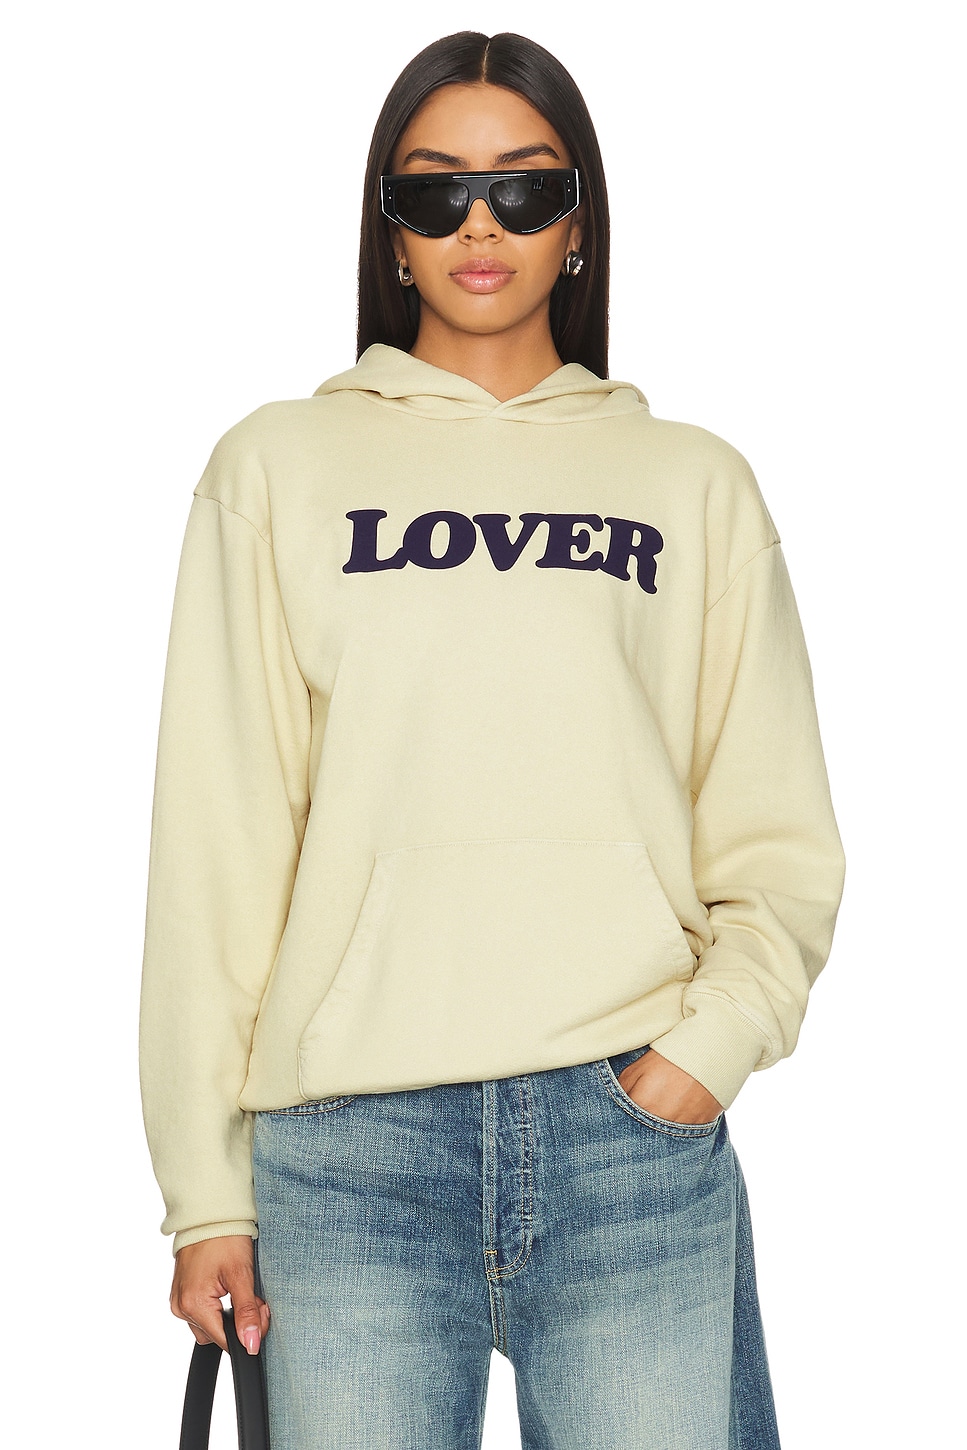 Bianca Chandon Lover Logo Hoodie in Light Khaki | REVOLVE